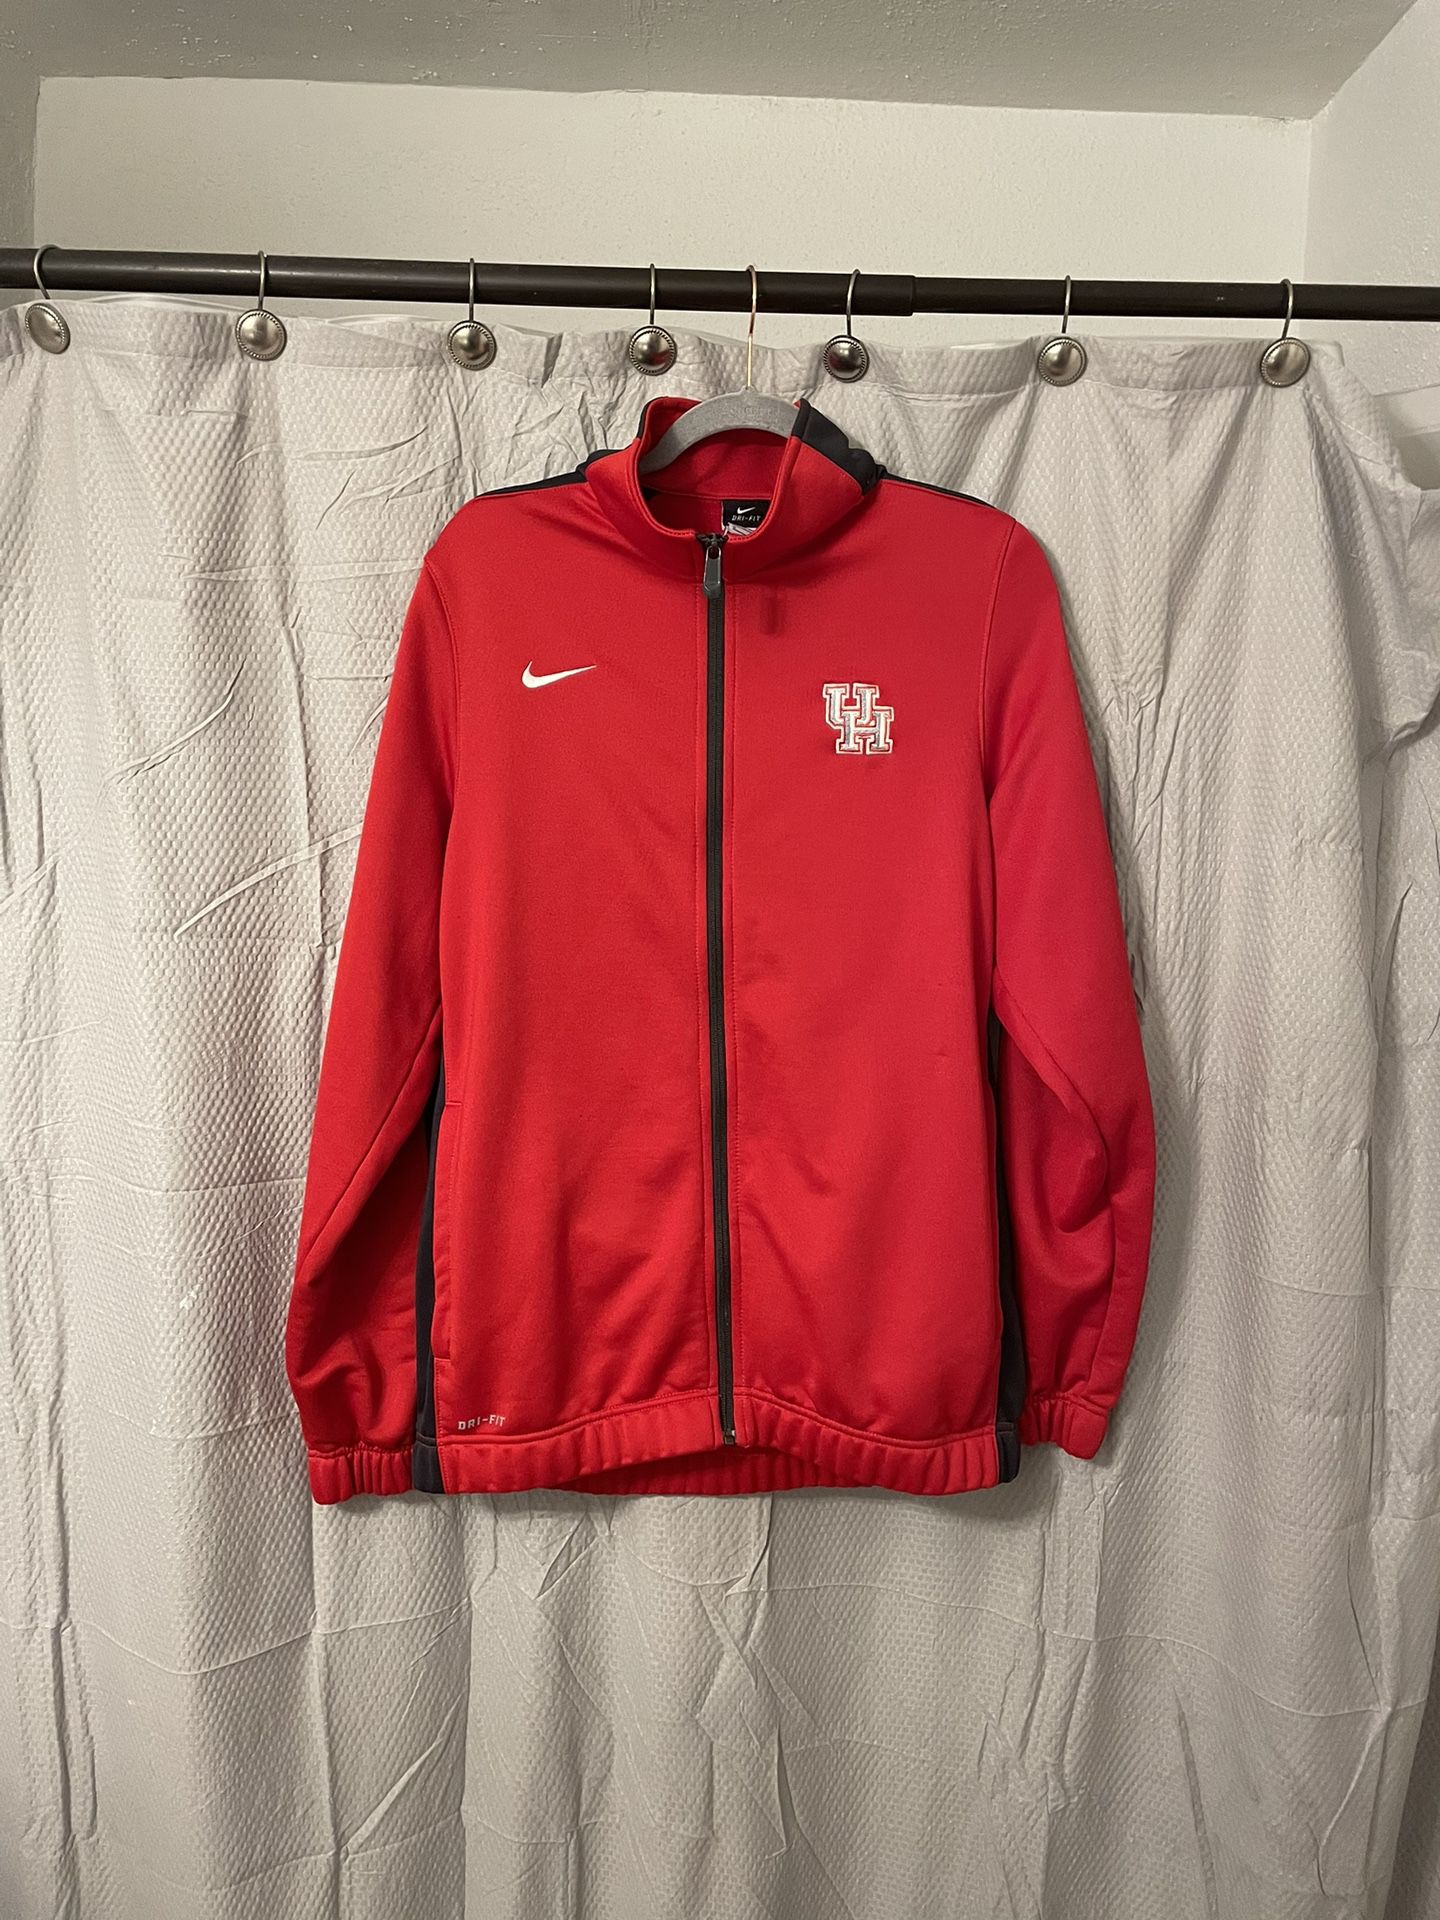 Nike University of Houston Jacket size Medium Full zip